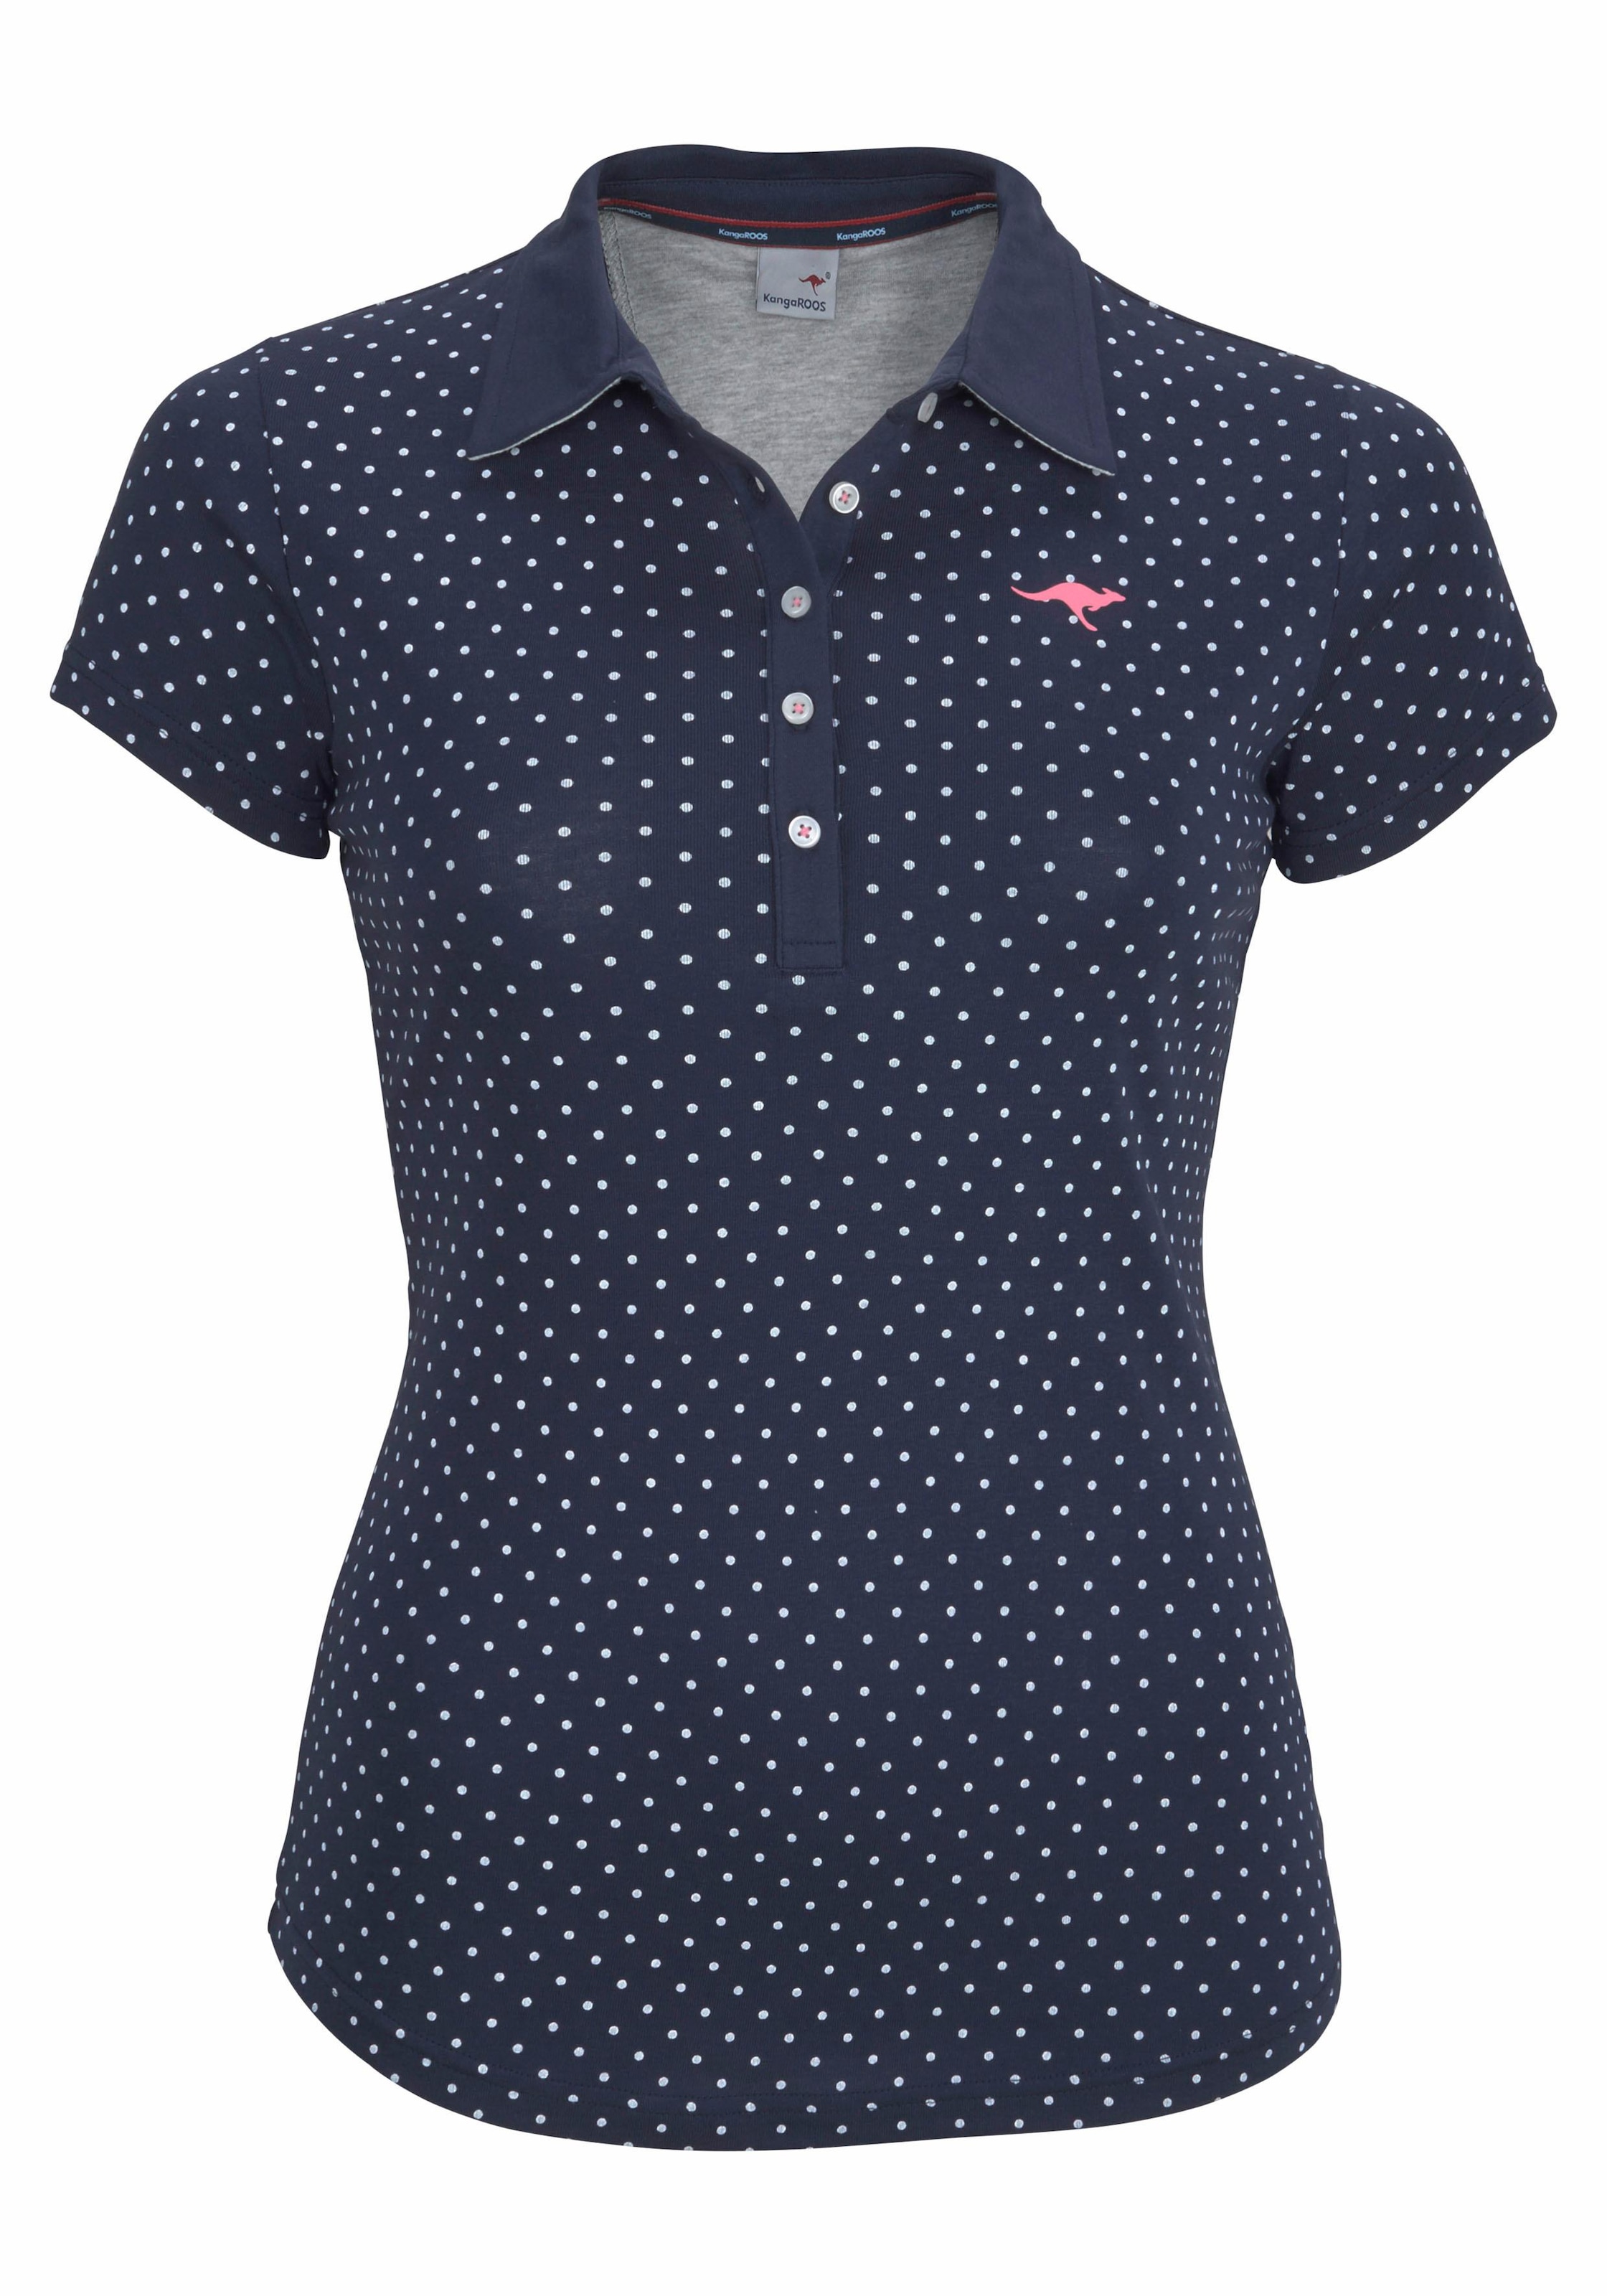 KangaROOS Poloshirt, im kaufen im Online-Shop tollen Pünktchen-Muster